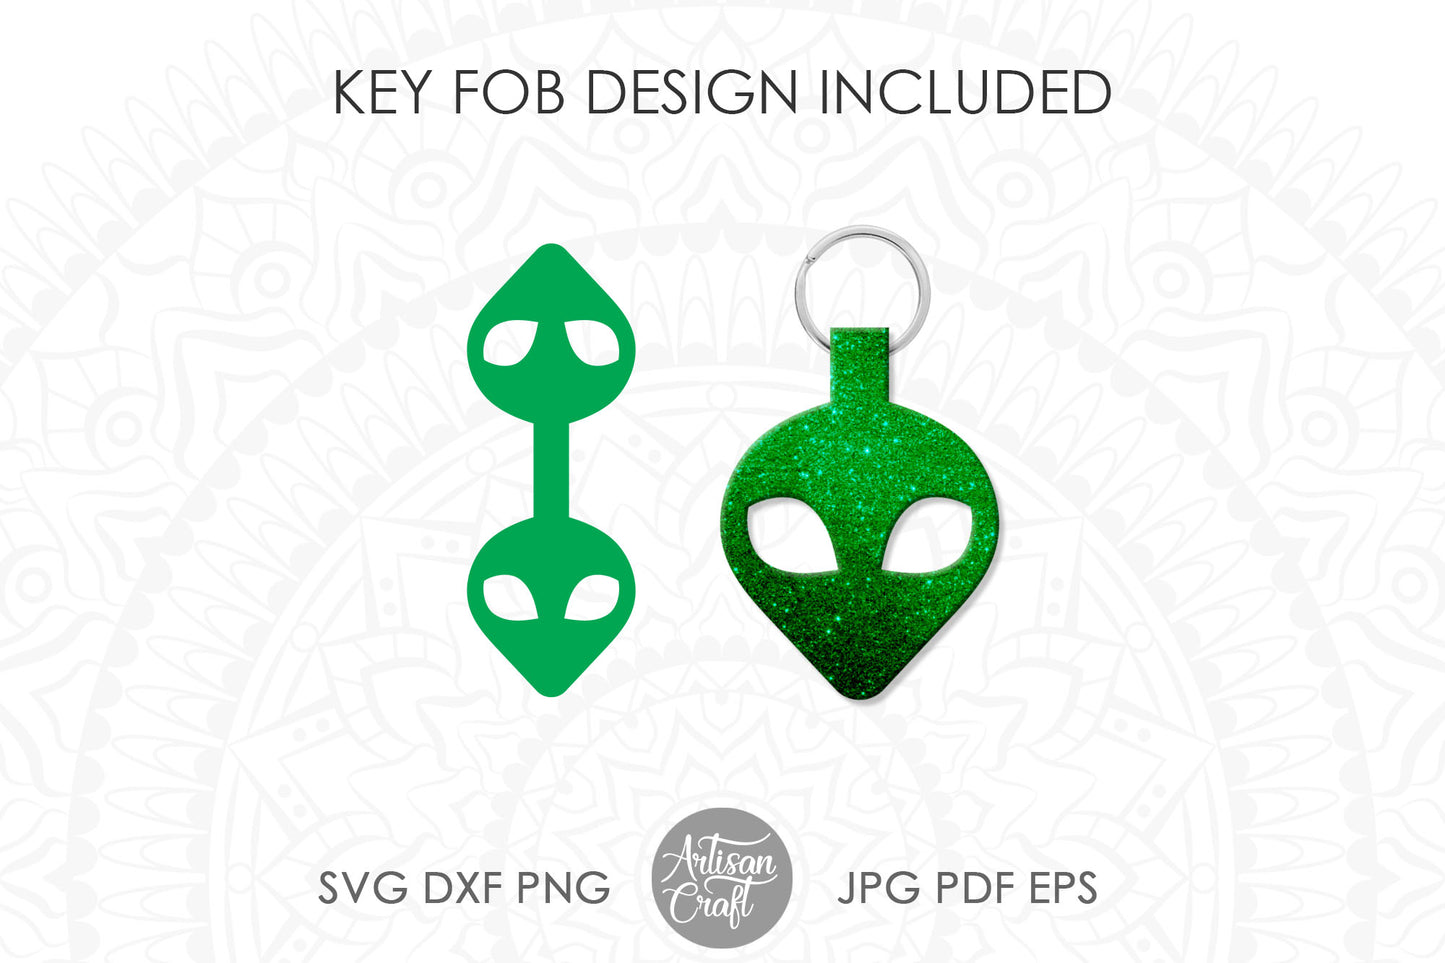 Alien keychain SVG